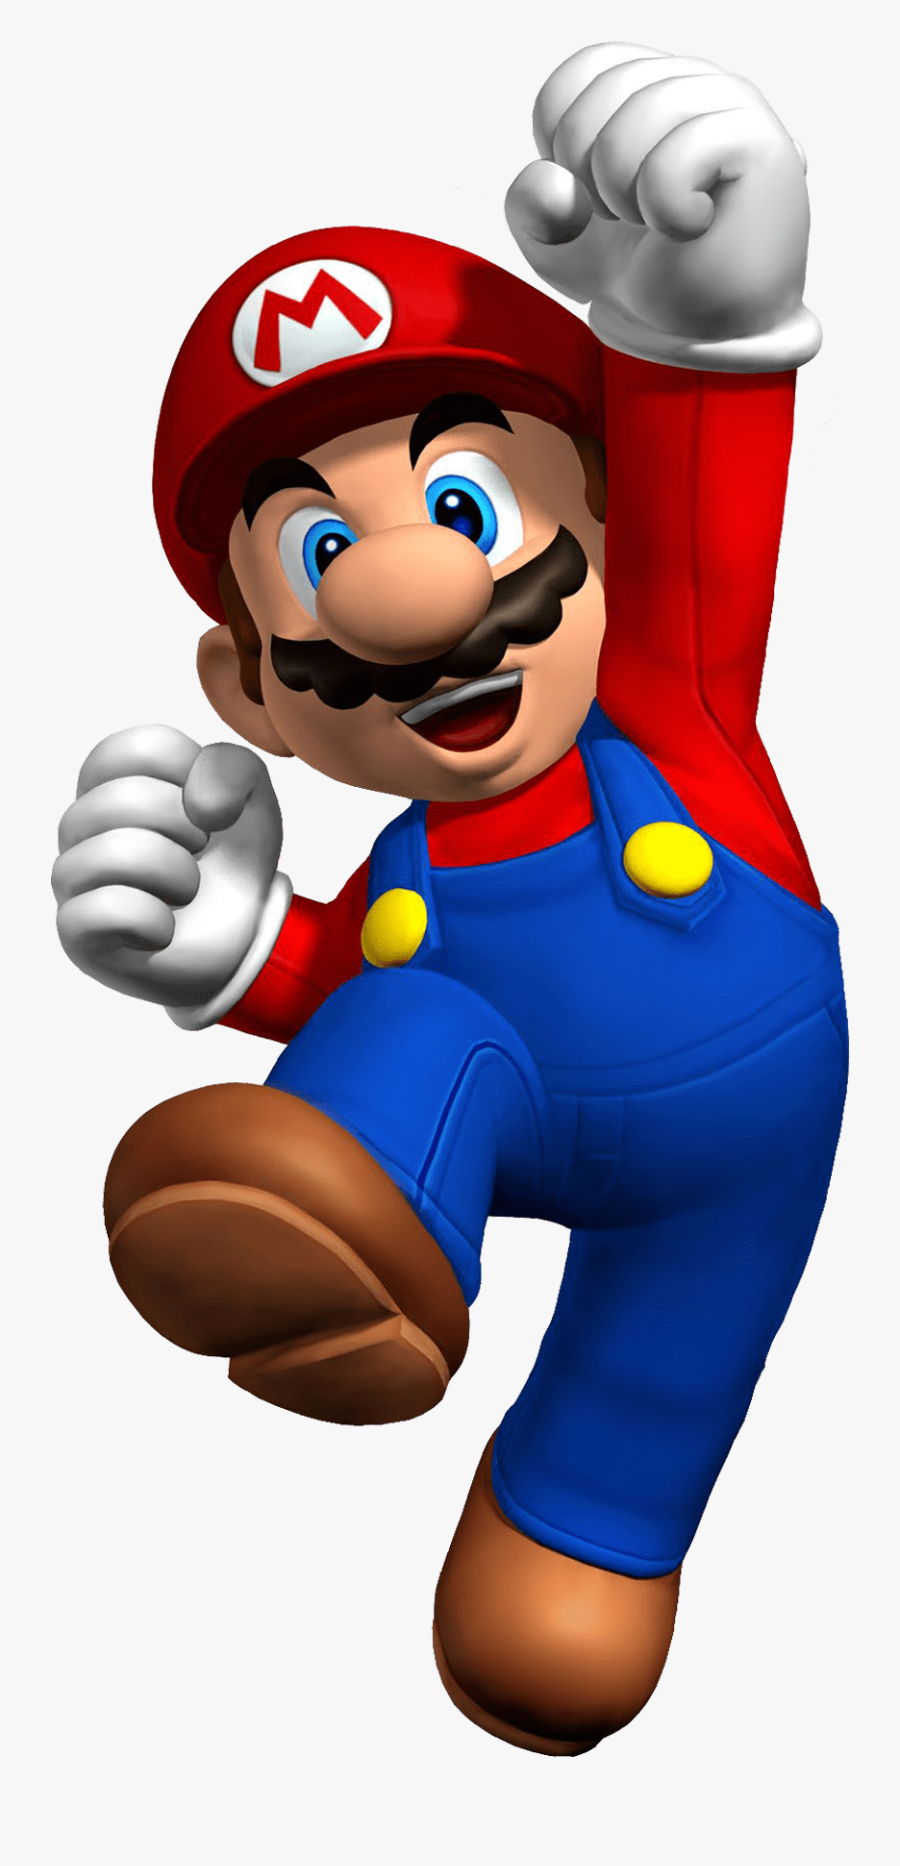 Download Mario Super Images - Sega Genesis Mini Gaming Console